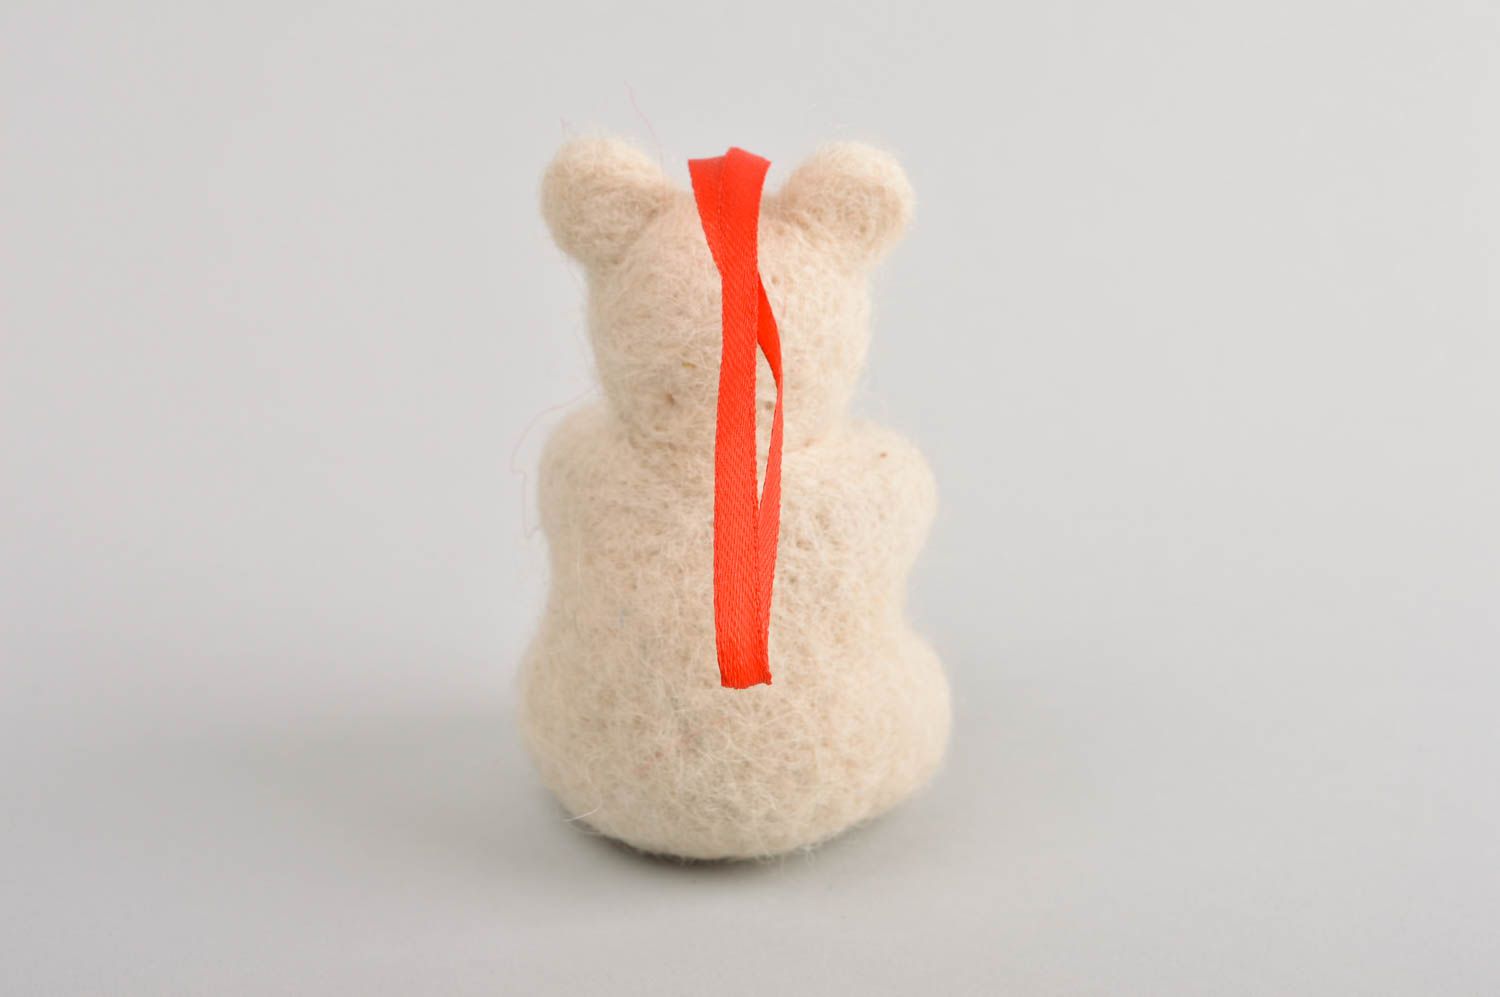 Handmade toy gift ideas designer toy for children woolen toy for nursery decor photo 4